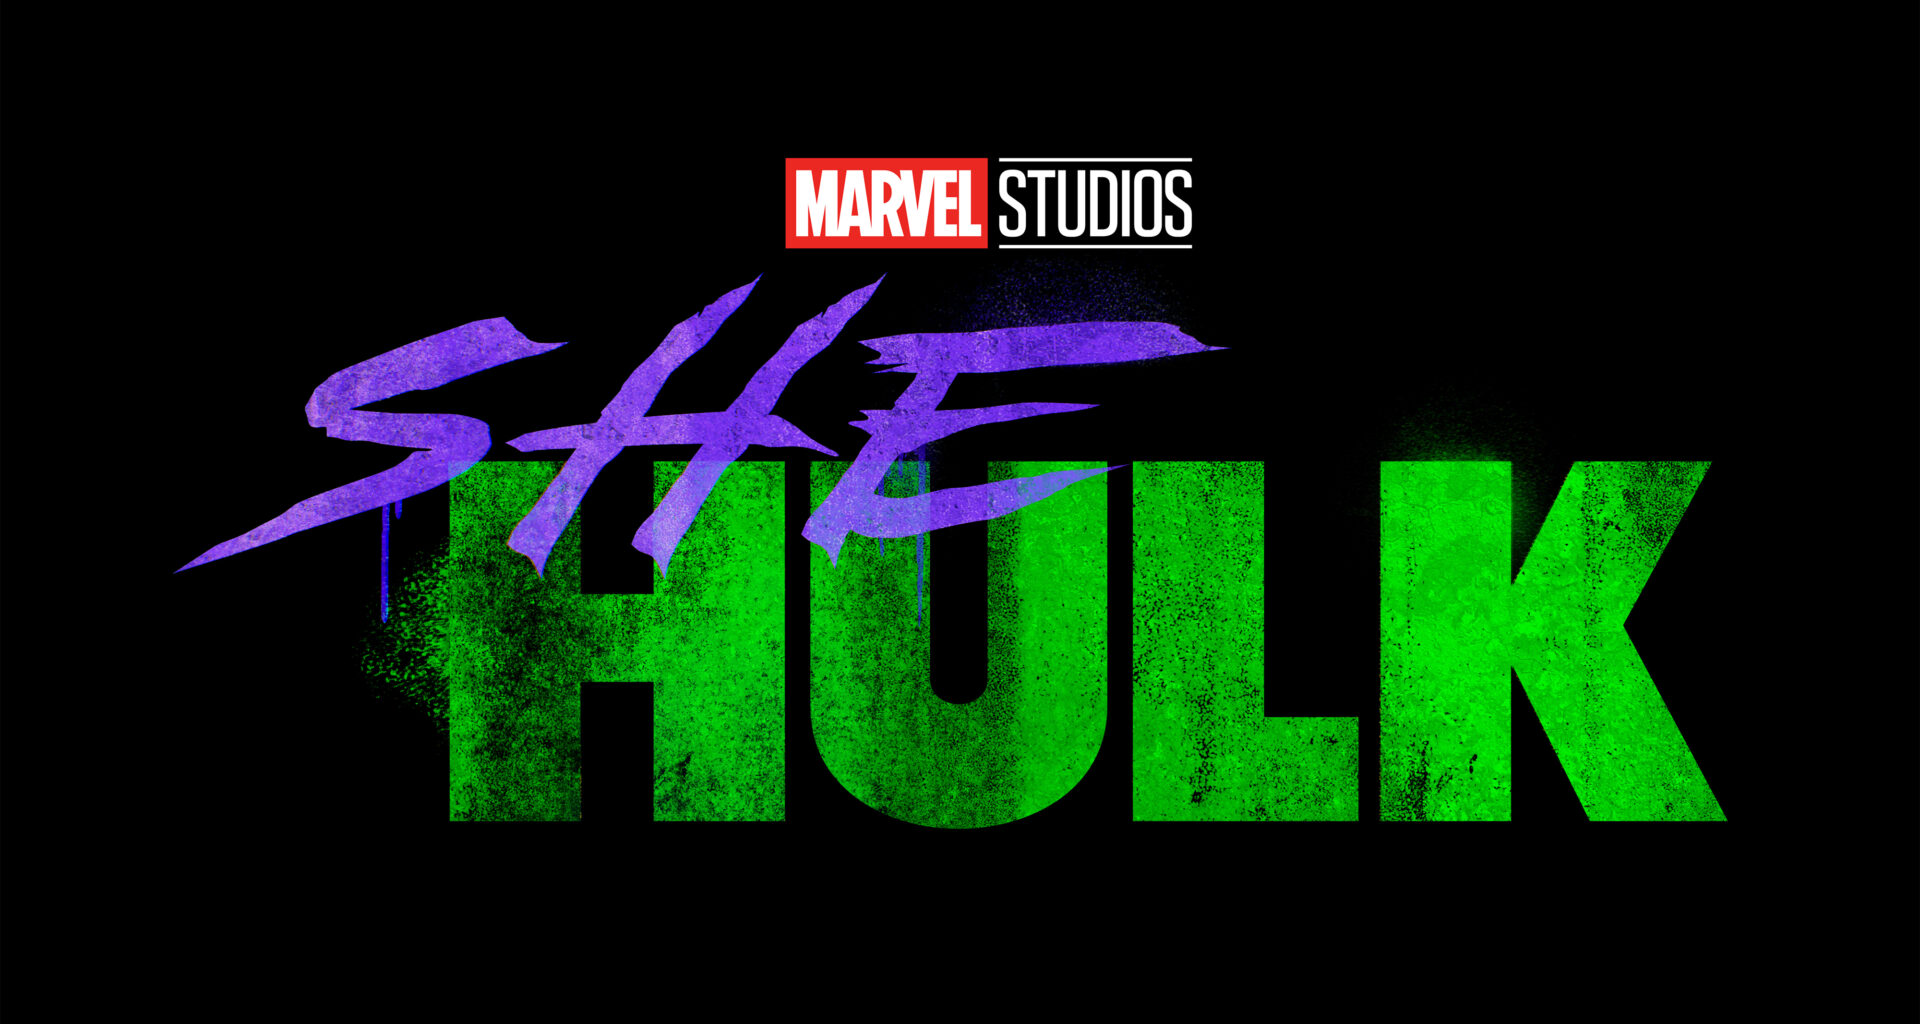 She Hulk Episode 1 Release Date